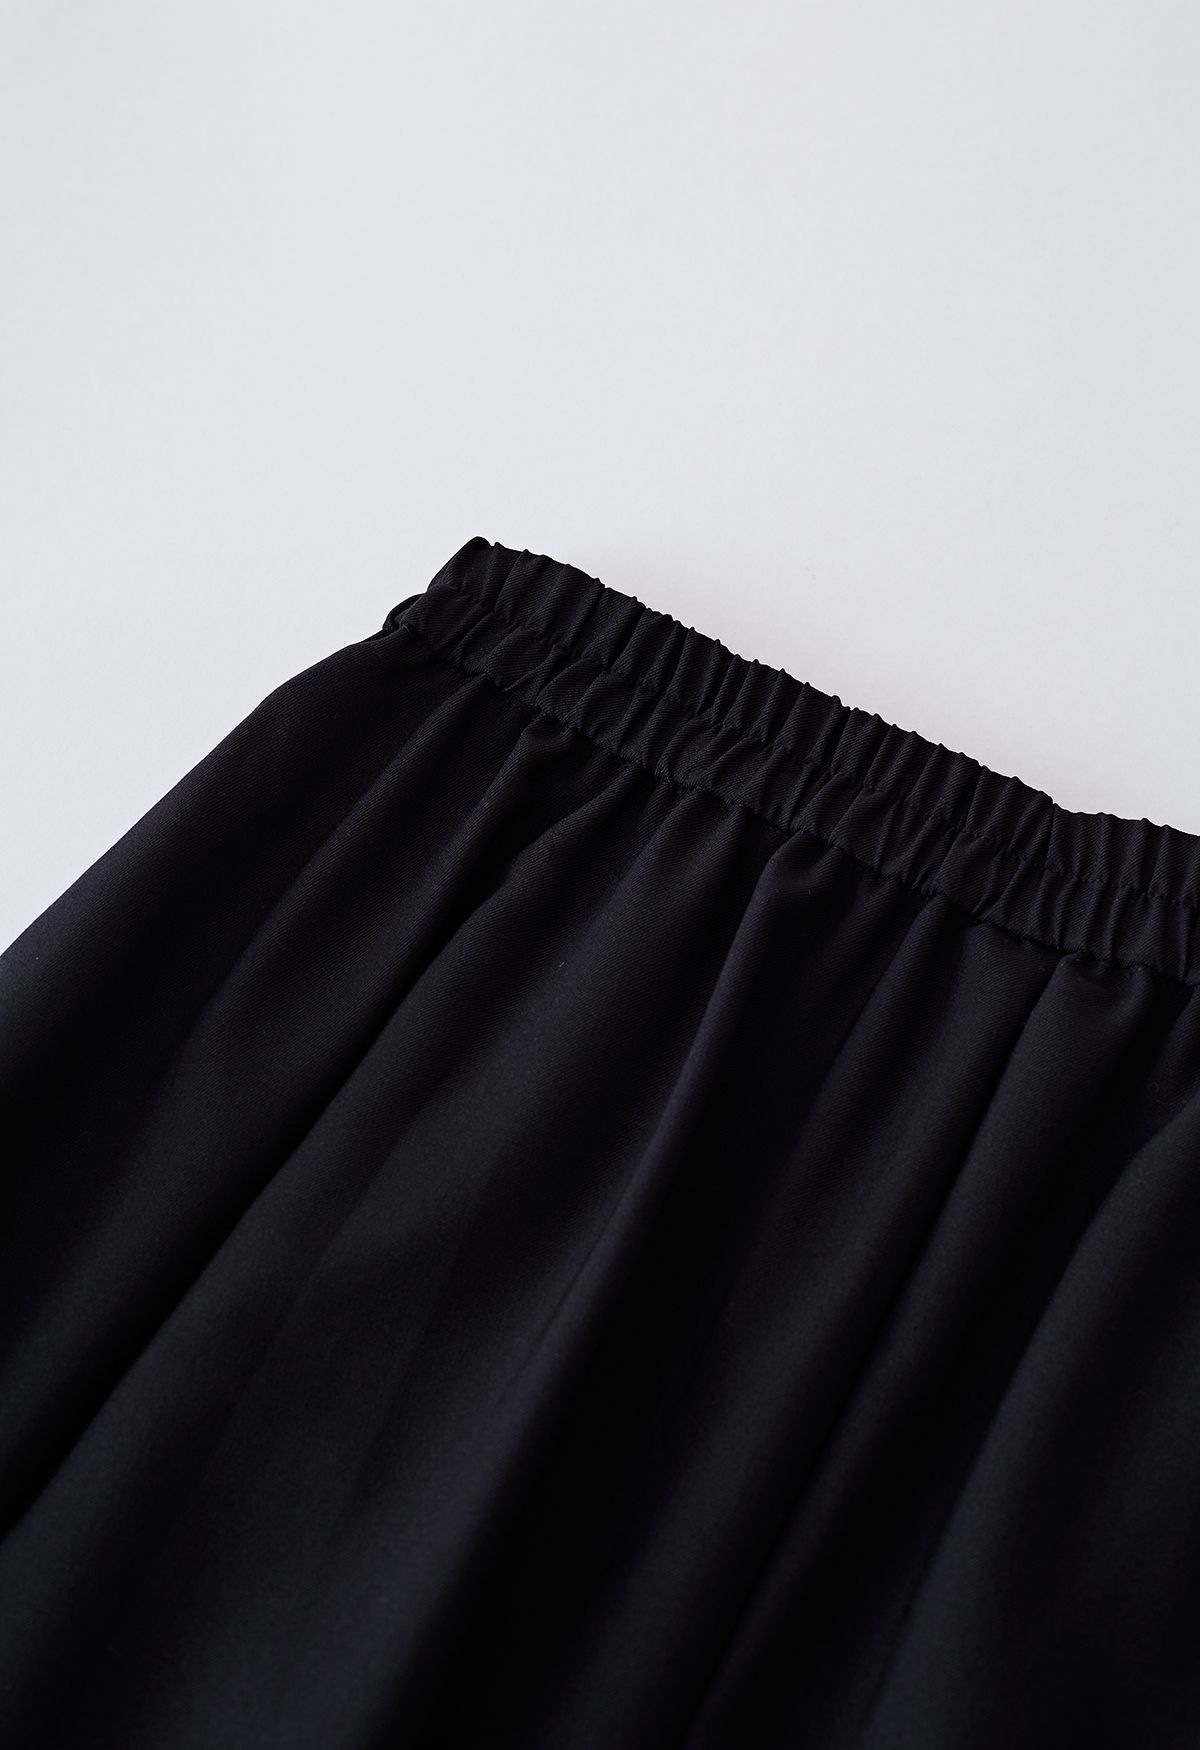 Falda evasé plisada con detalle de costuras en negro